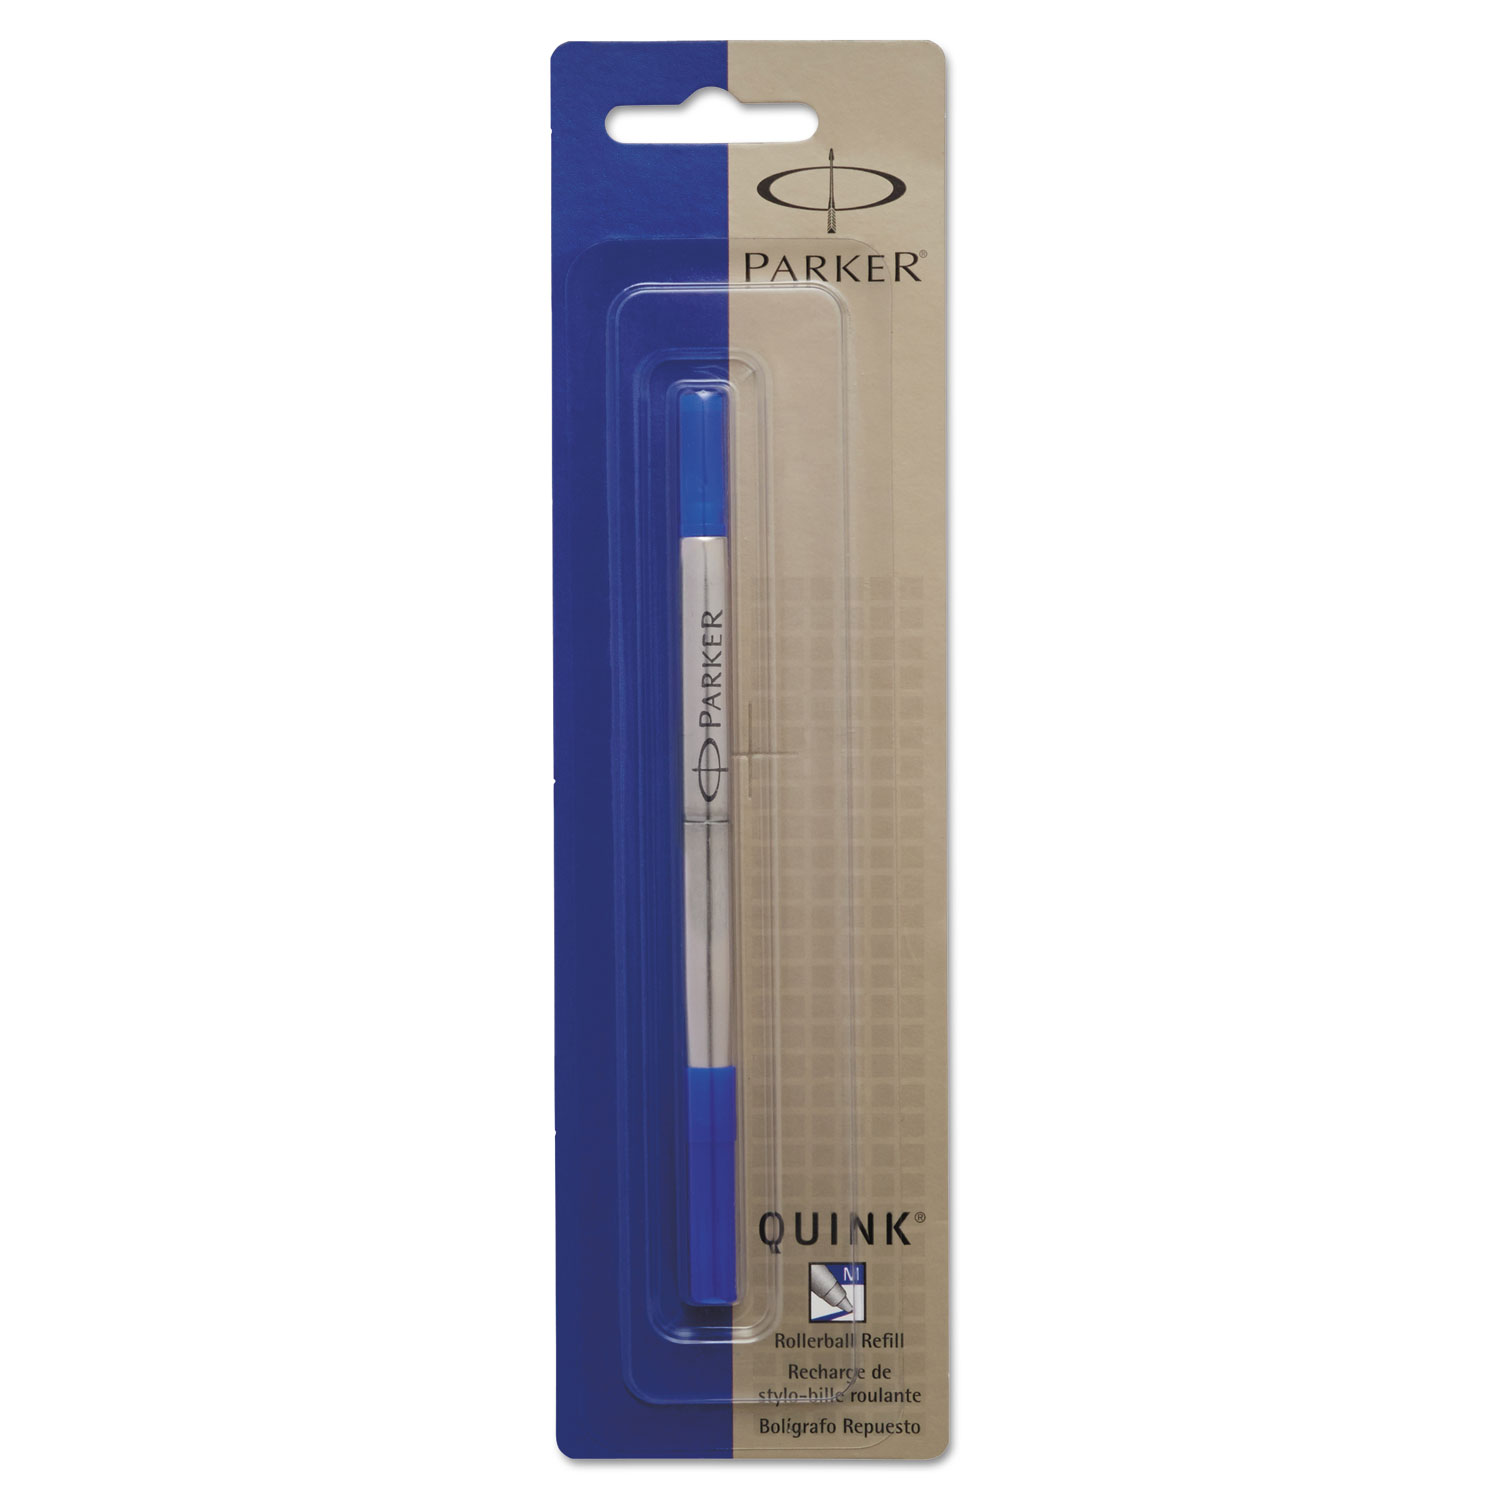  Parker 1950324 Refill for Parker Roller Ball Pens, Medium Point, Blue Ink (PAR1950324) 